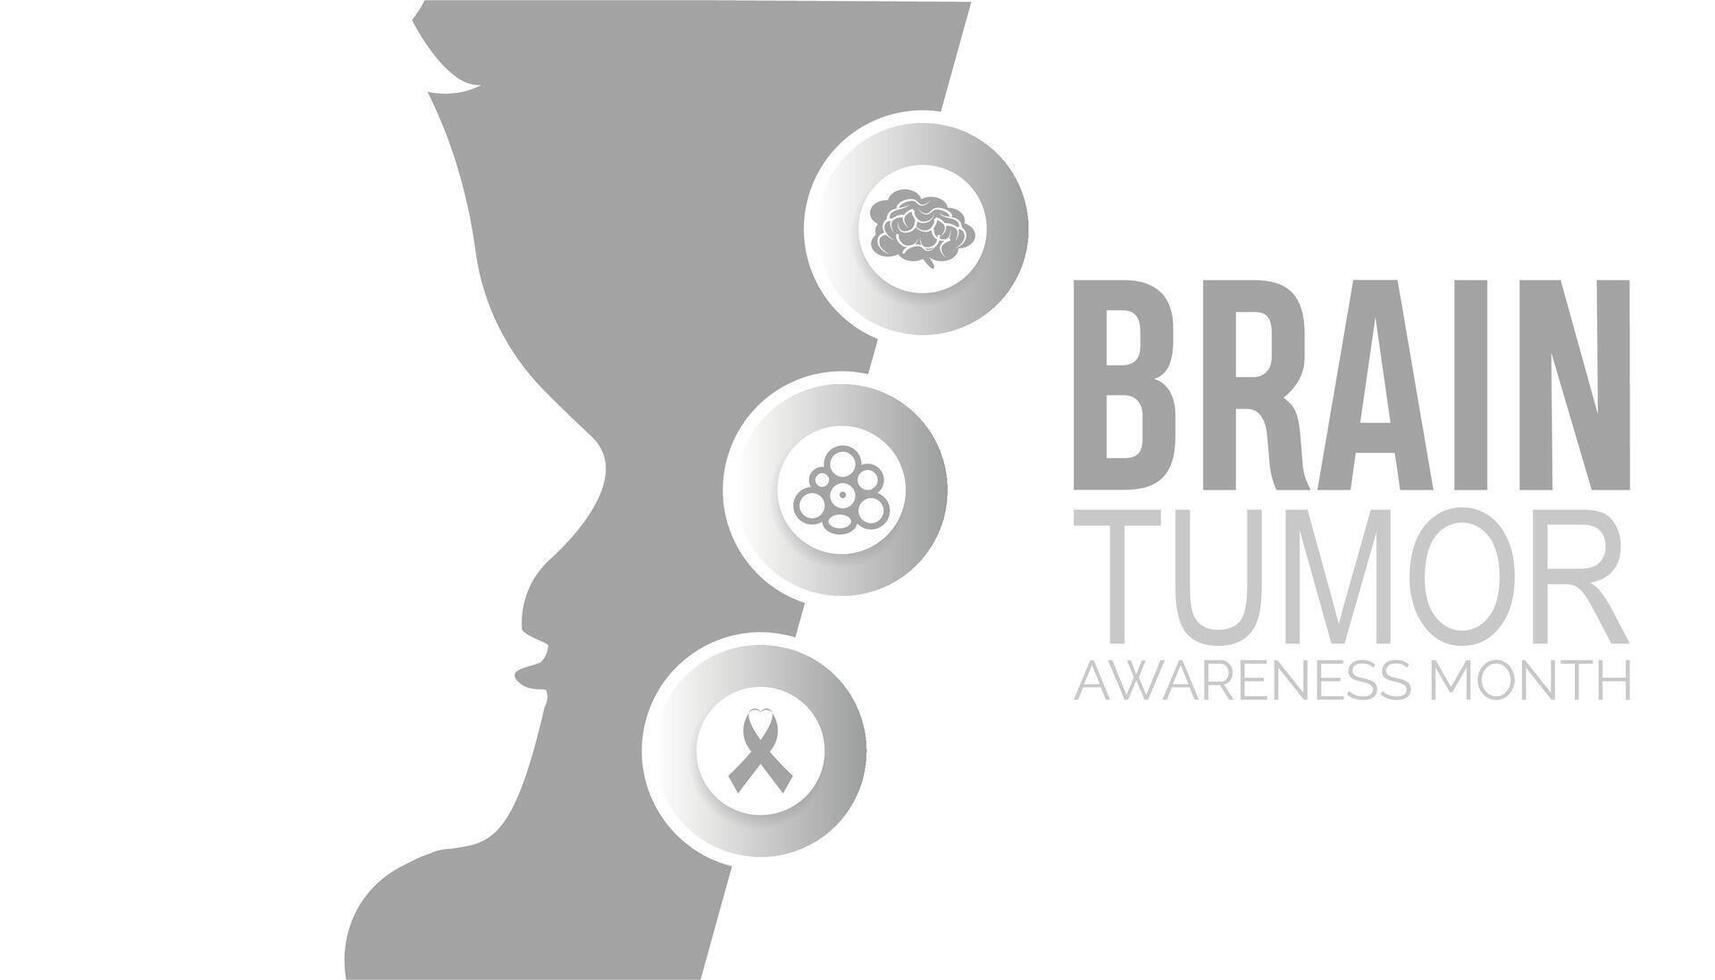 hersenen tumor bewustzijn maand opgemerkt elke jaar in kunnen. sjabloon voor achtergrond, banier, kaart, poster met tekst inscriptie. vector